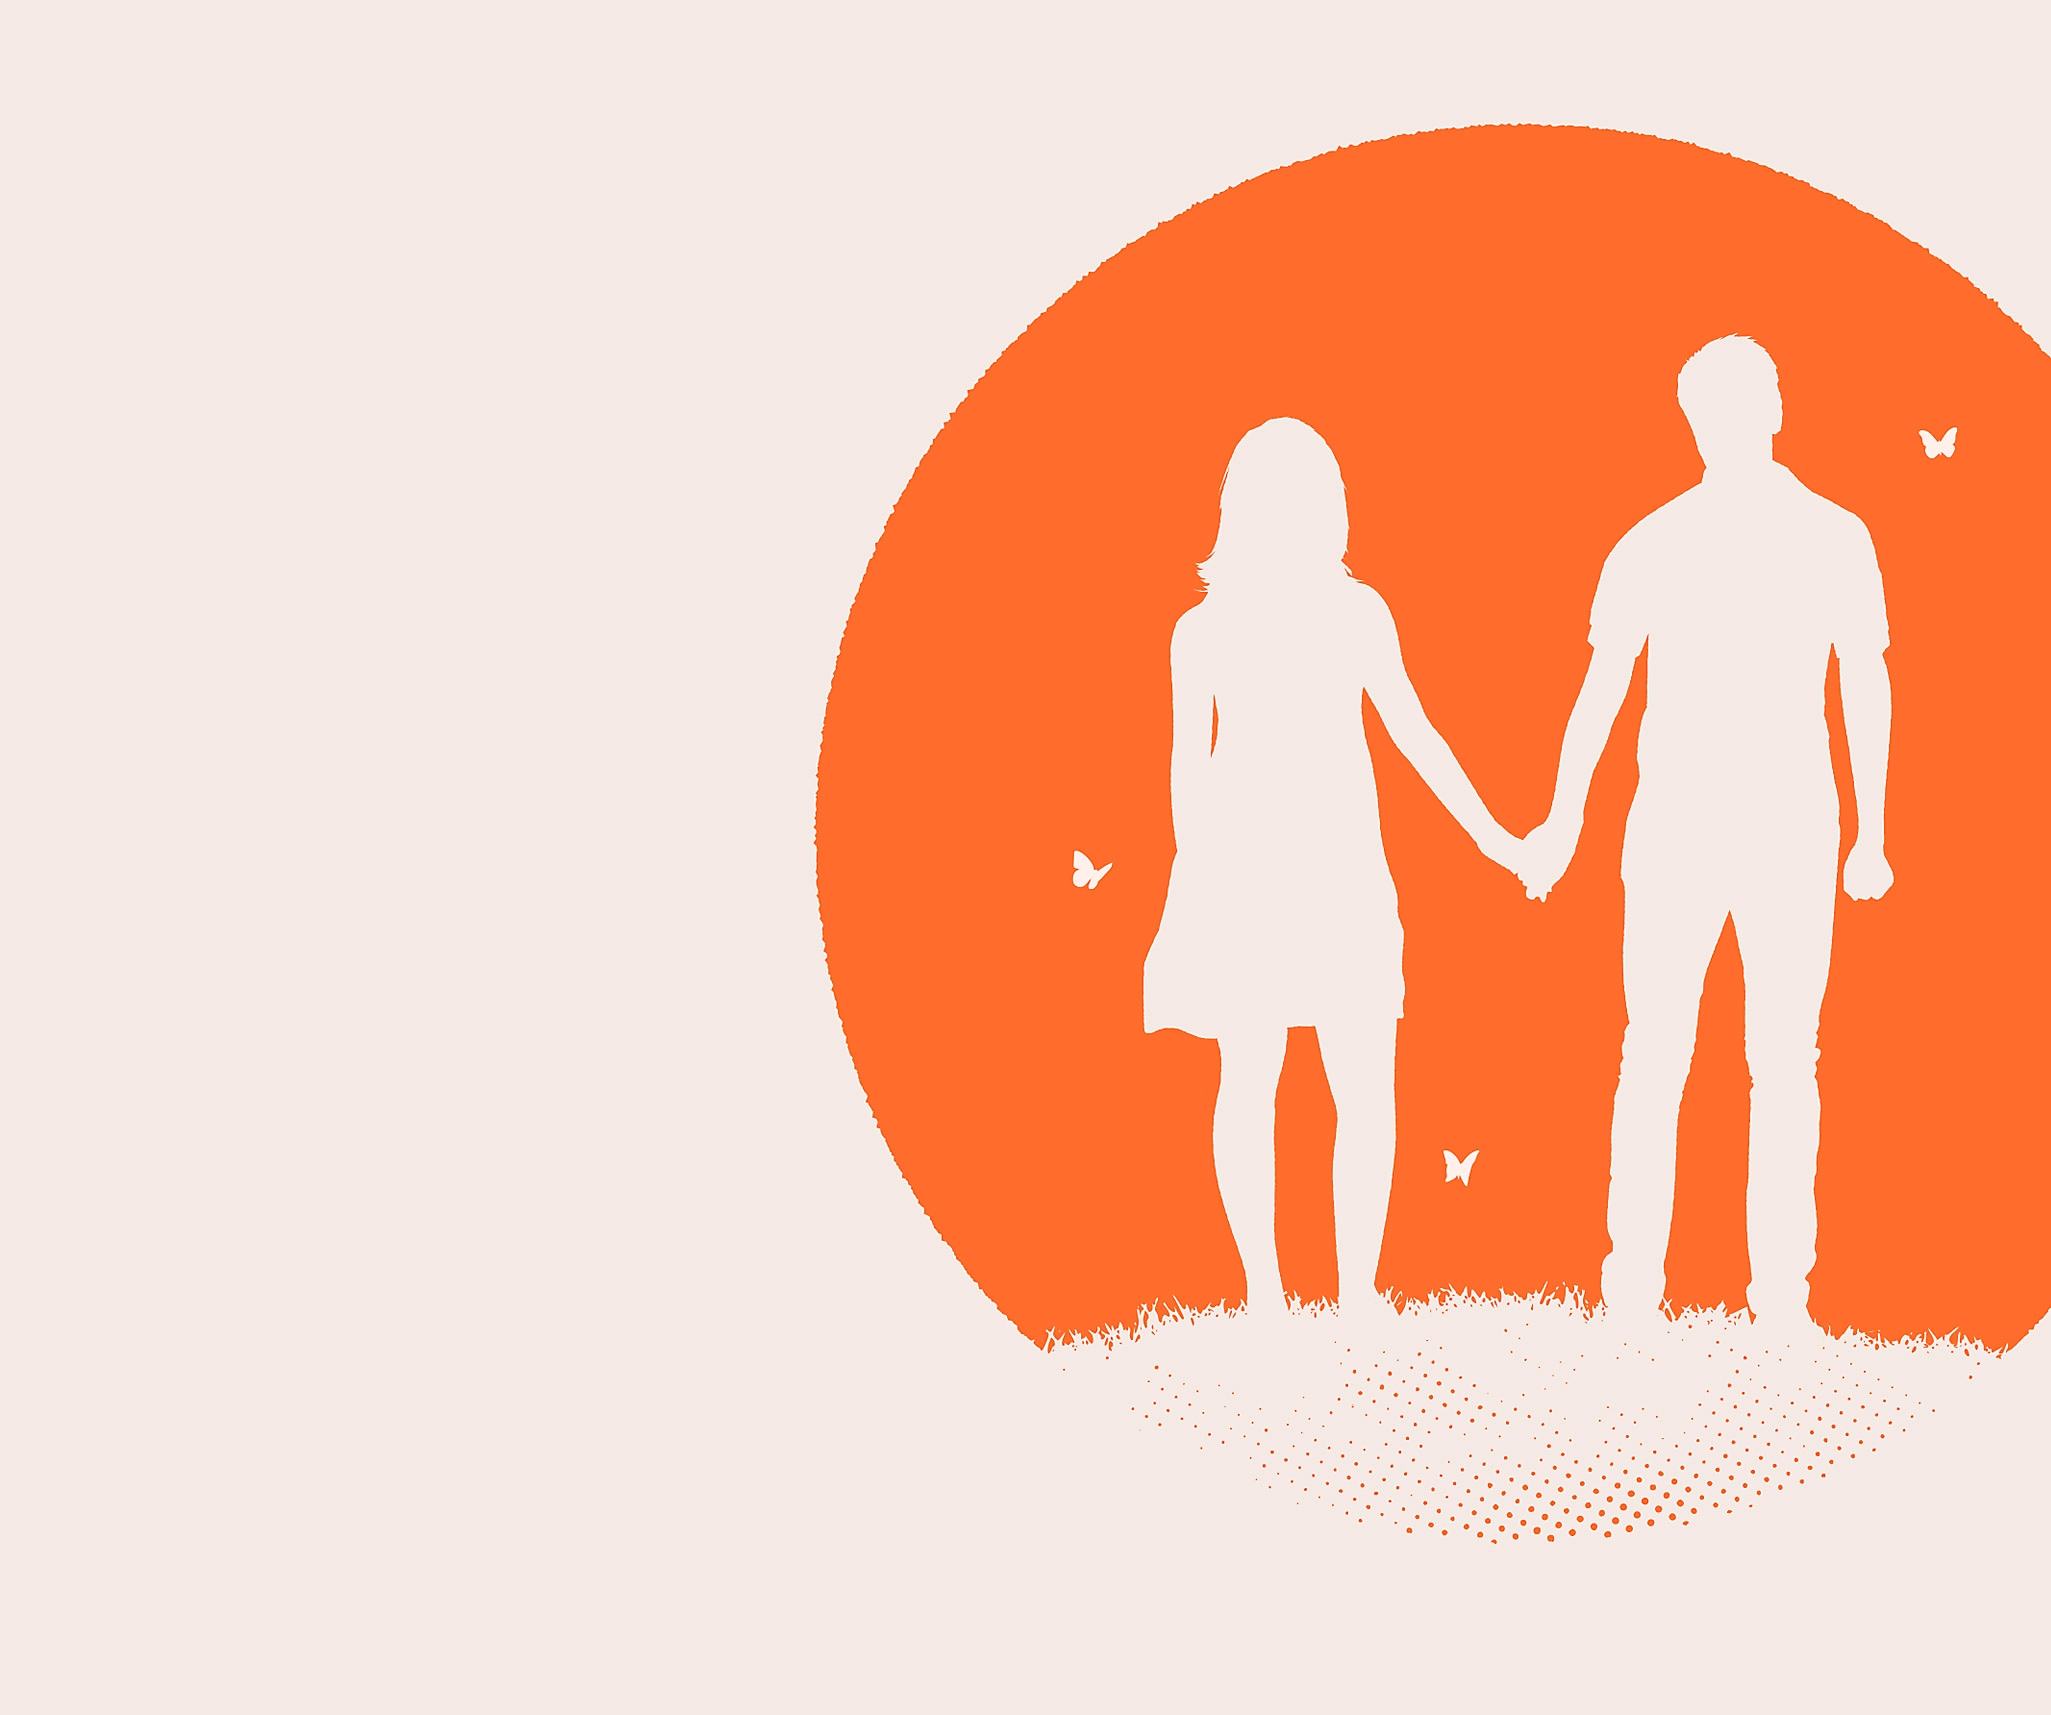 Image d'Everybody's Gone to the Rapture - un homme et une femme aux silhouettes blanches sur un fond circulaire orange.